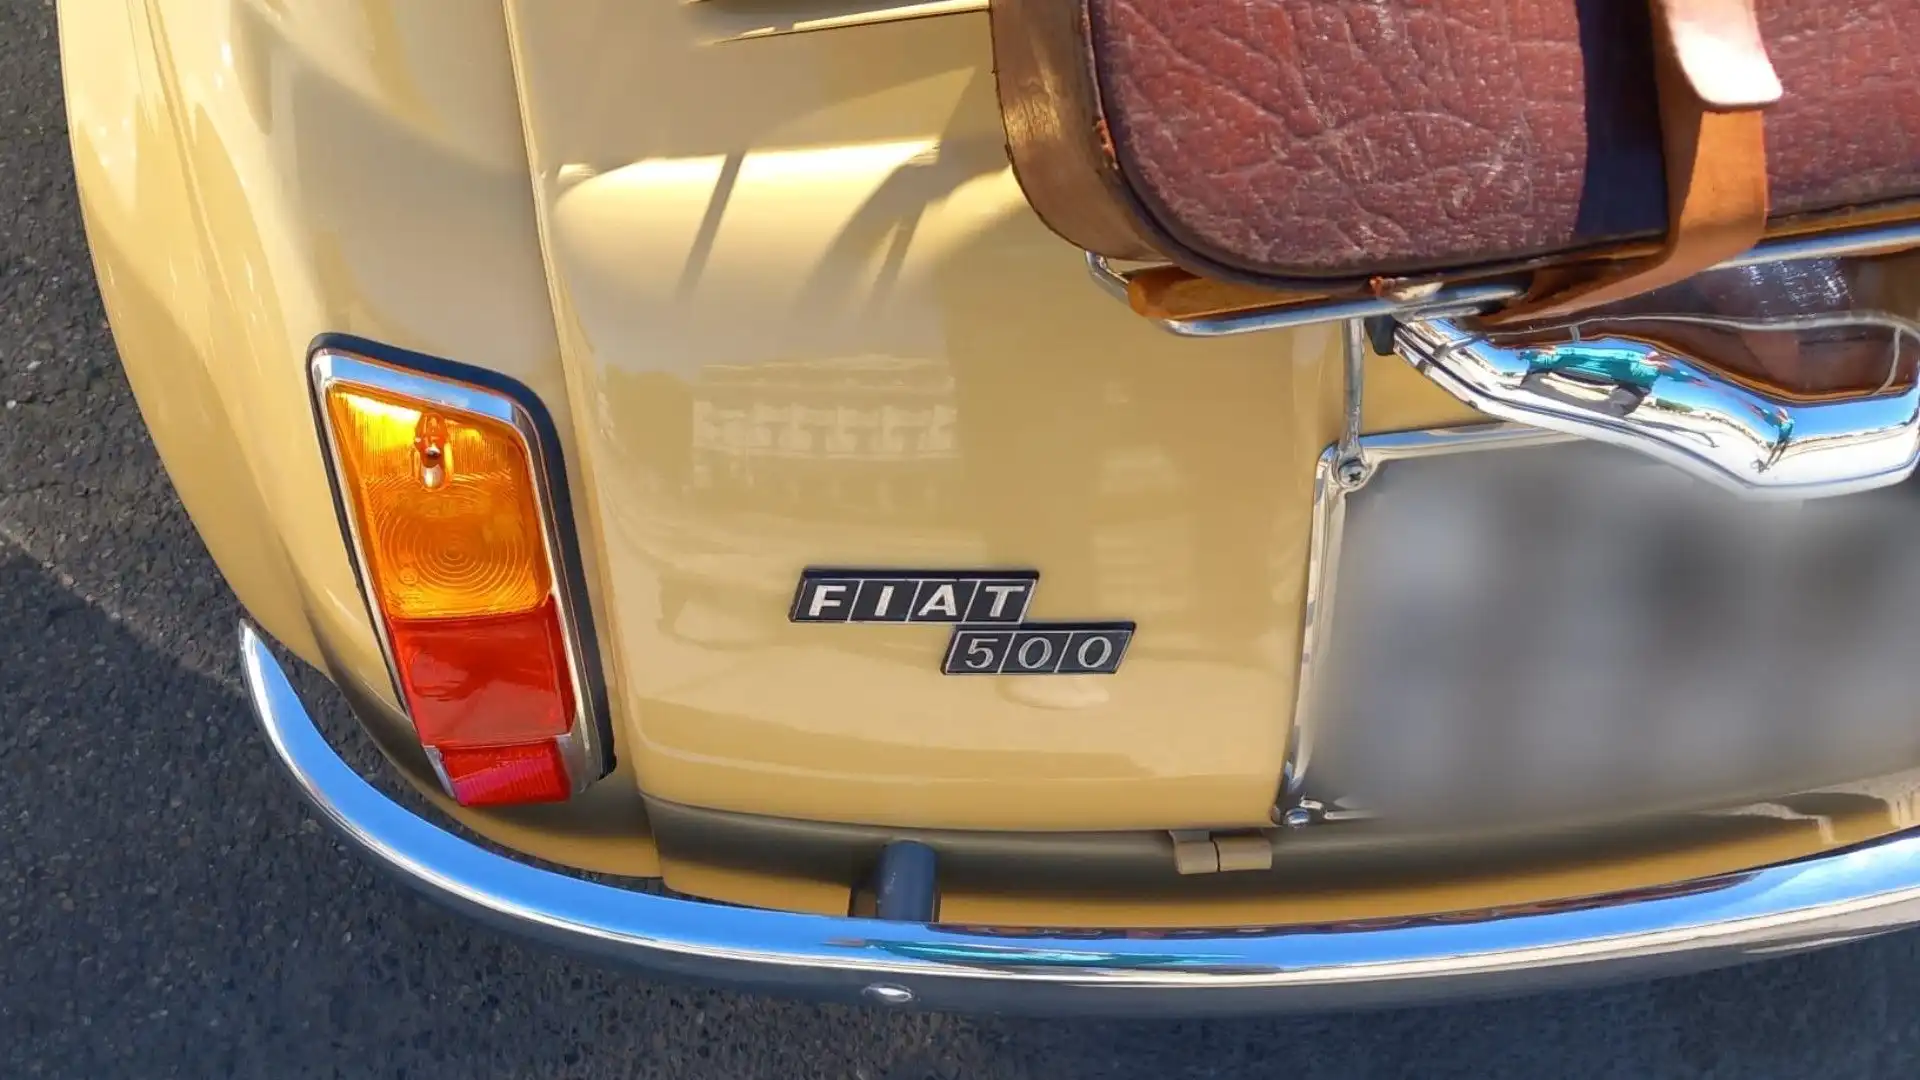 Una nuova targhetta "FIAT 500" è stata posta sul cofano posteriore